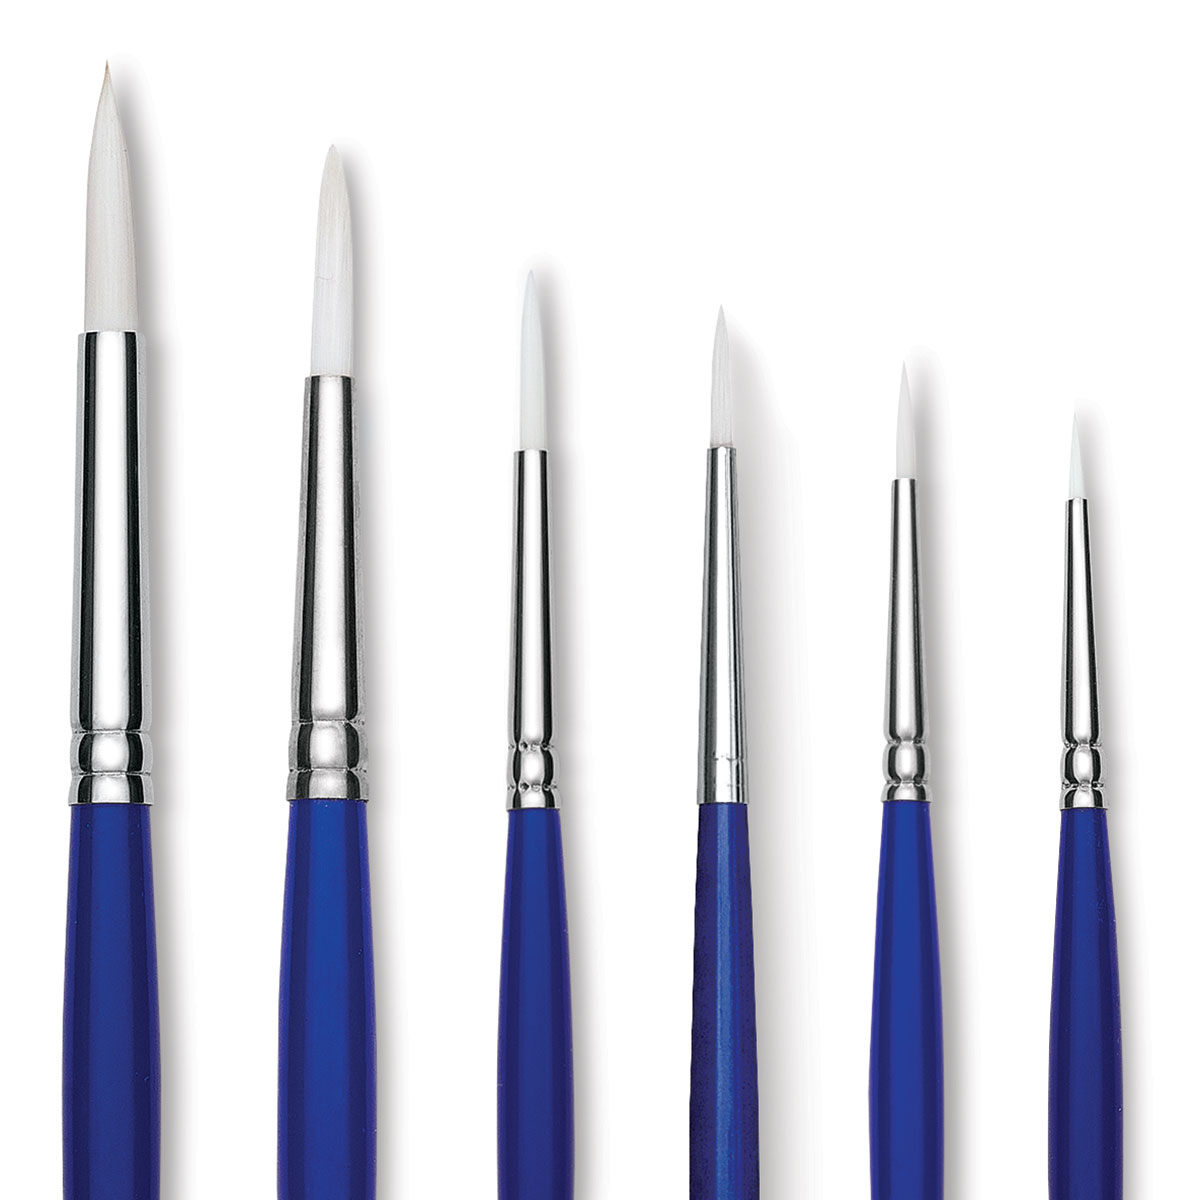 Blick Scholastic Wonder White Scrubber Brushes - Set of 3, Short